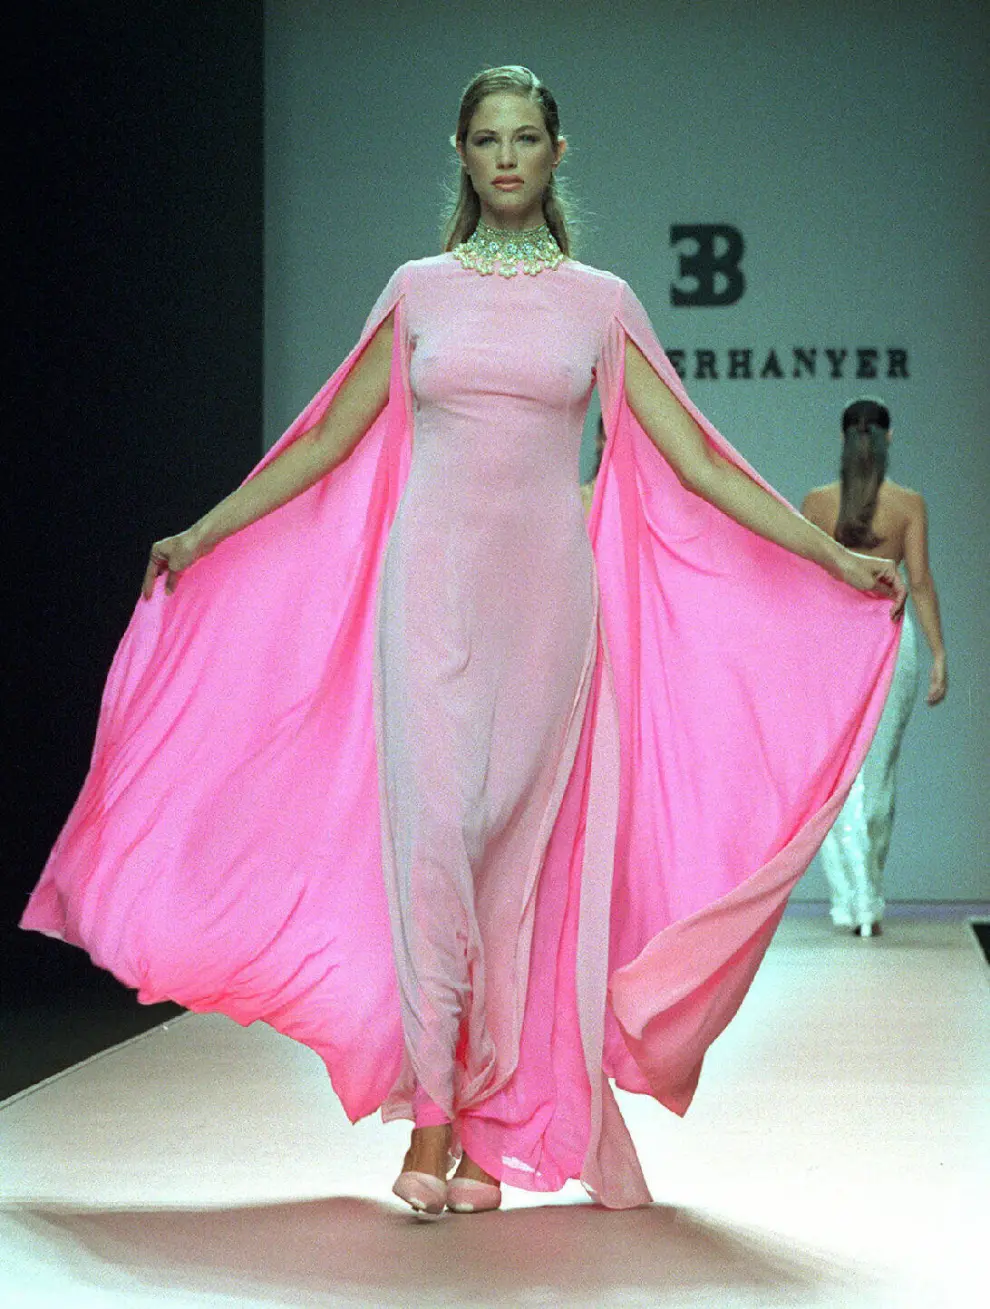 Martina Klein desfila con un traje de noche de seda rosa. Colección primavera/verano 2001